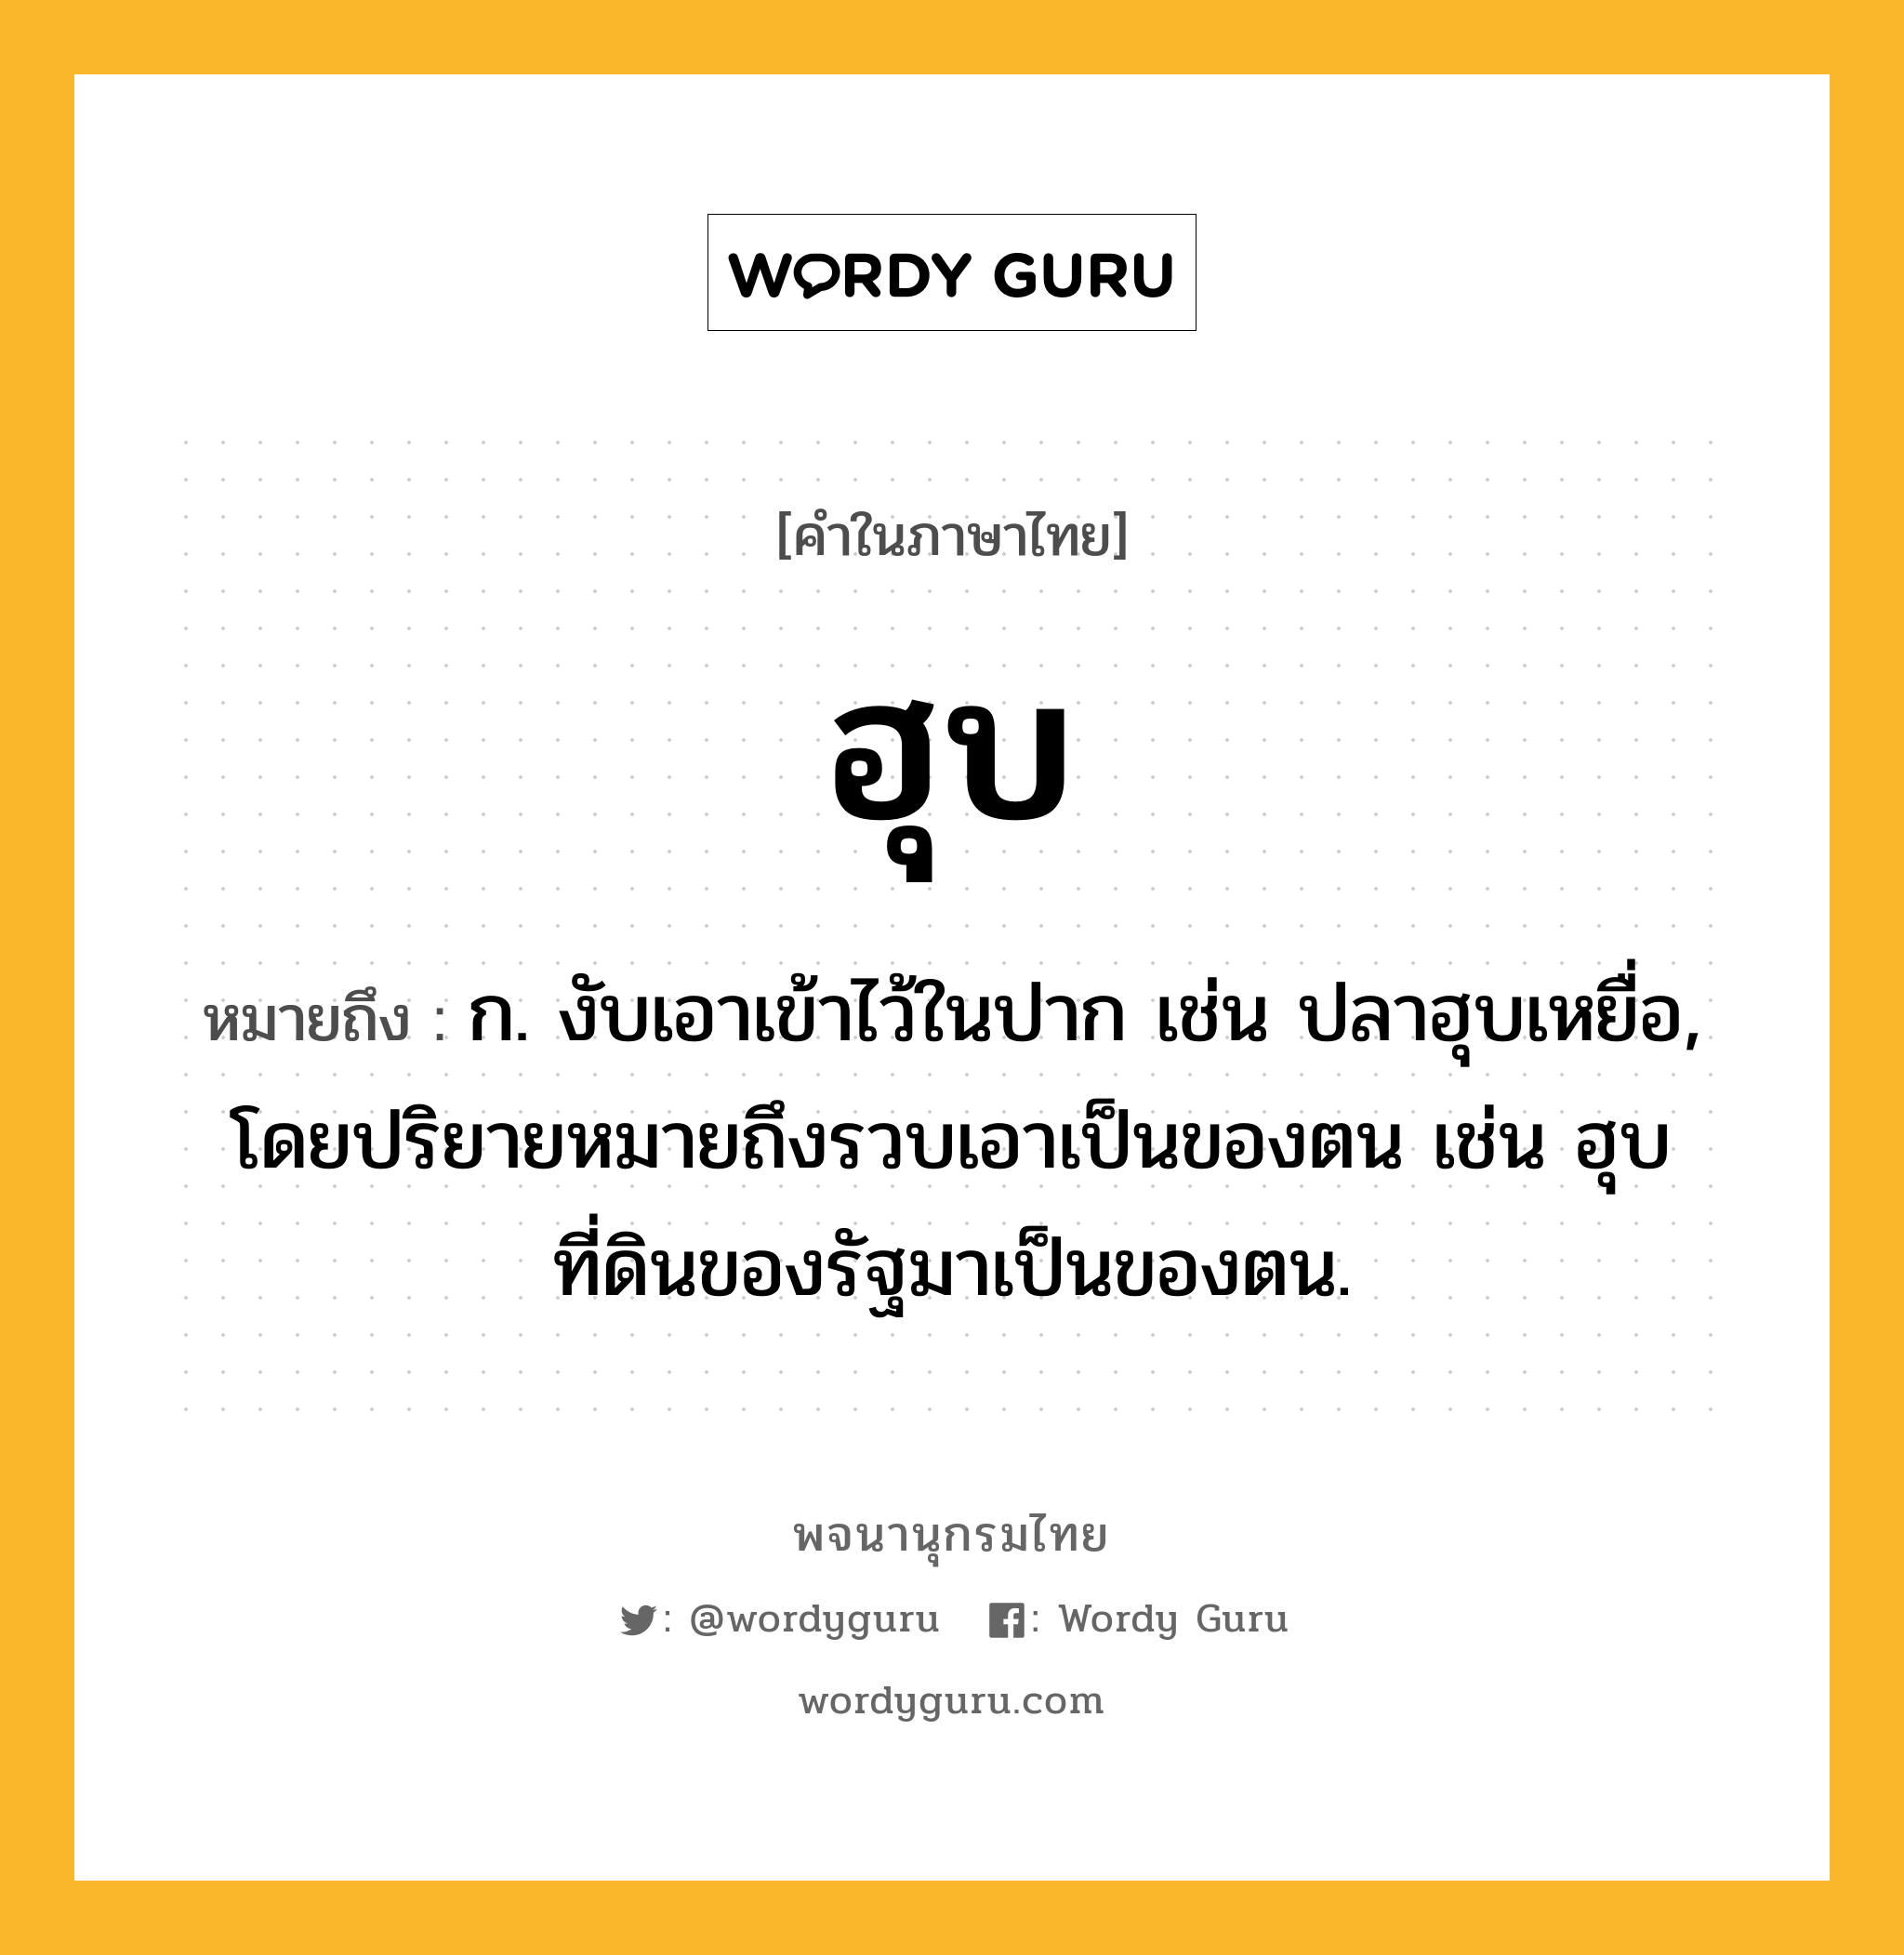 ฮุบ หมายถึงอะไร?, คำในภาษาไทย ฮุบ หมายถึง ก. งับเอาเข้าไว้ในปาก เช่น ปลาฮุบเหยื่อ, โดยปริยายหมายถึงรวบเอาเป็นของตน เช่น ฮุบที่ดินของรัฐมาเป็นของตน.